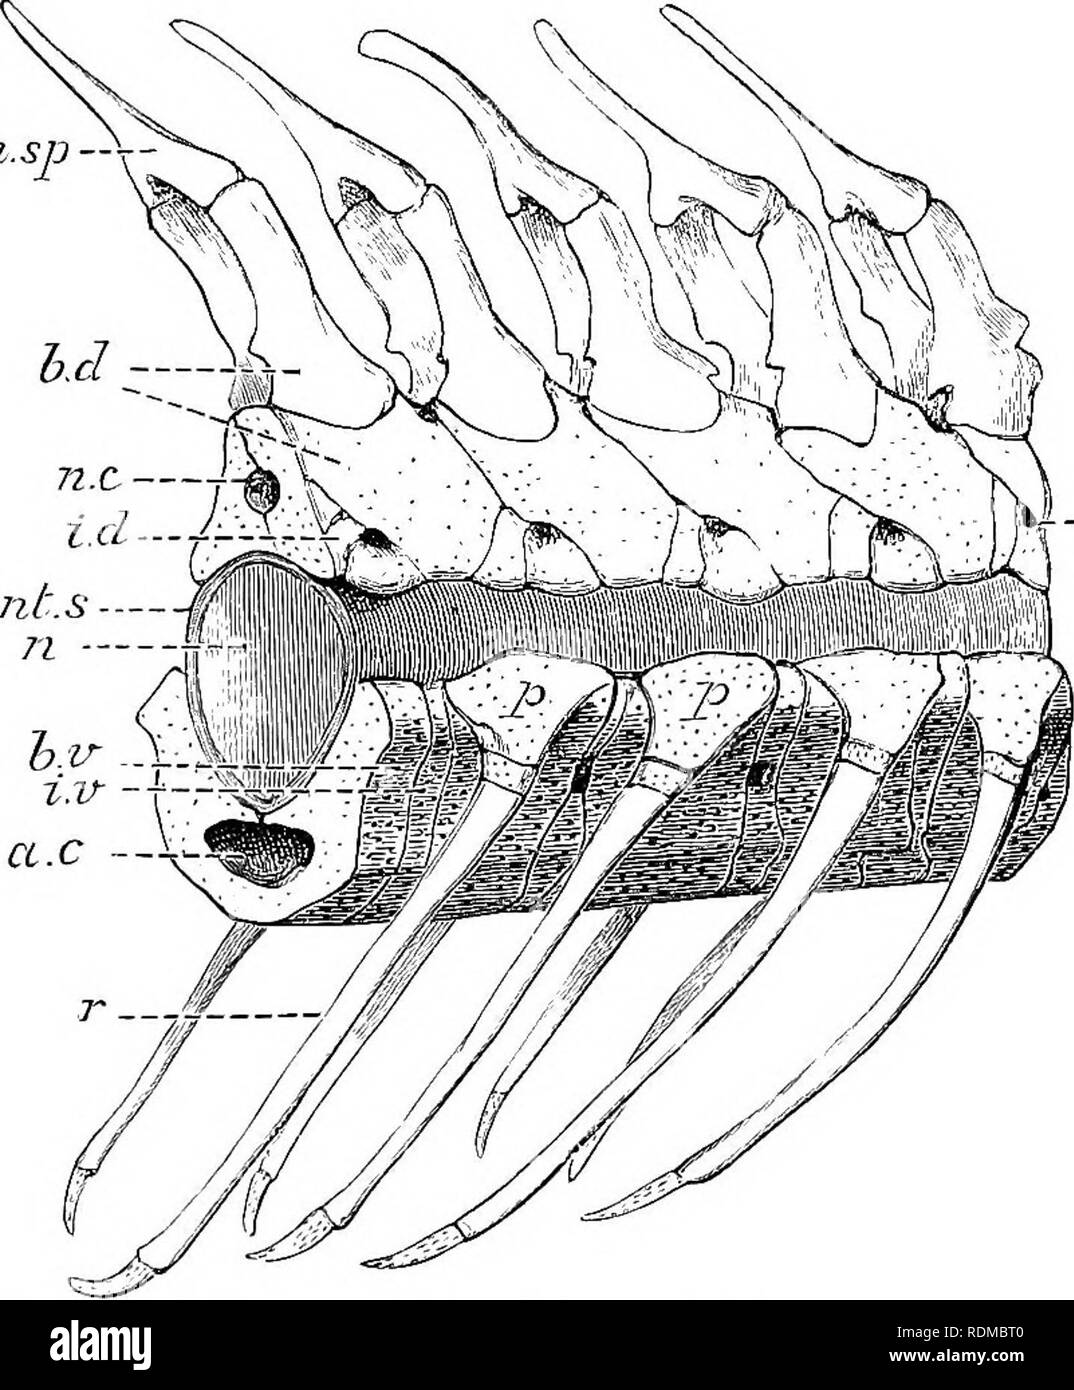 . Il Cambridge storia naturale. Zoologia. 200 pesci CHAP. Inter-ventrals sembrano 'BiPlfeeiit. Ogni neuromere corrisponde con una coppia di basi-ventrals, di basi-dorsals e di inter-dorsals. Il haemal archi e spine sono formate in parte dalle basi- ventrals, ma principalmente dall'Unione ventrale delle successive coppie di nervature. Come nel Holocephali, il terminale arcualia della coda diventano fuse in un assiale diritta filamento cartilaginei, trans- versely diviso in segmenti, che sostituisce il notochord.. FlQ. 115.-vista laterale di tlie precaudal vertebre di un [Storione Acipenser sturio). a.C, Foto Stock